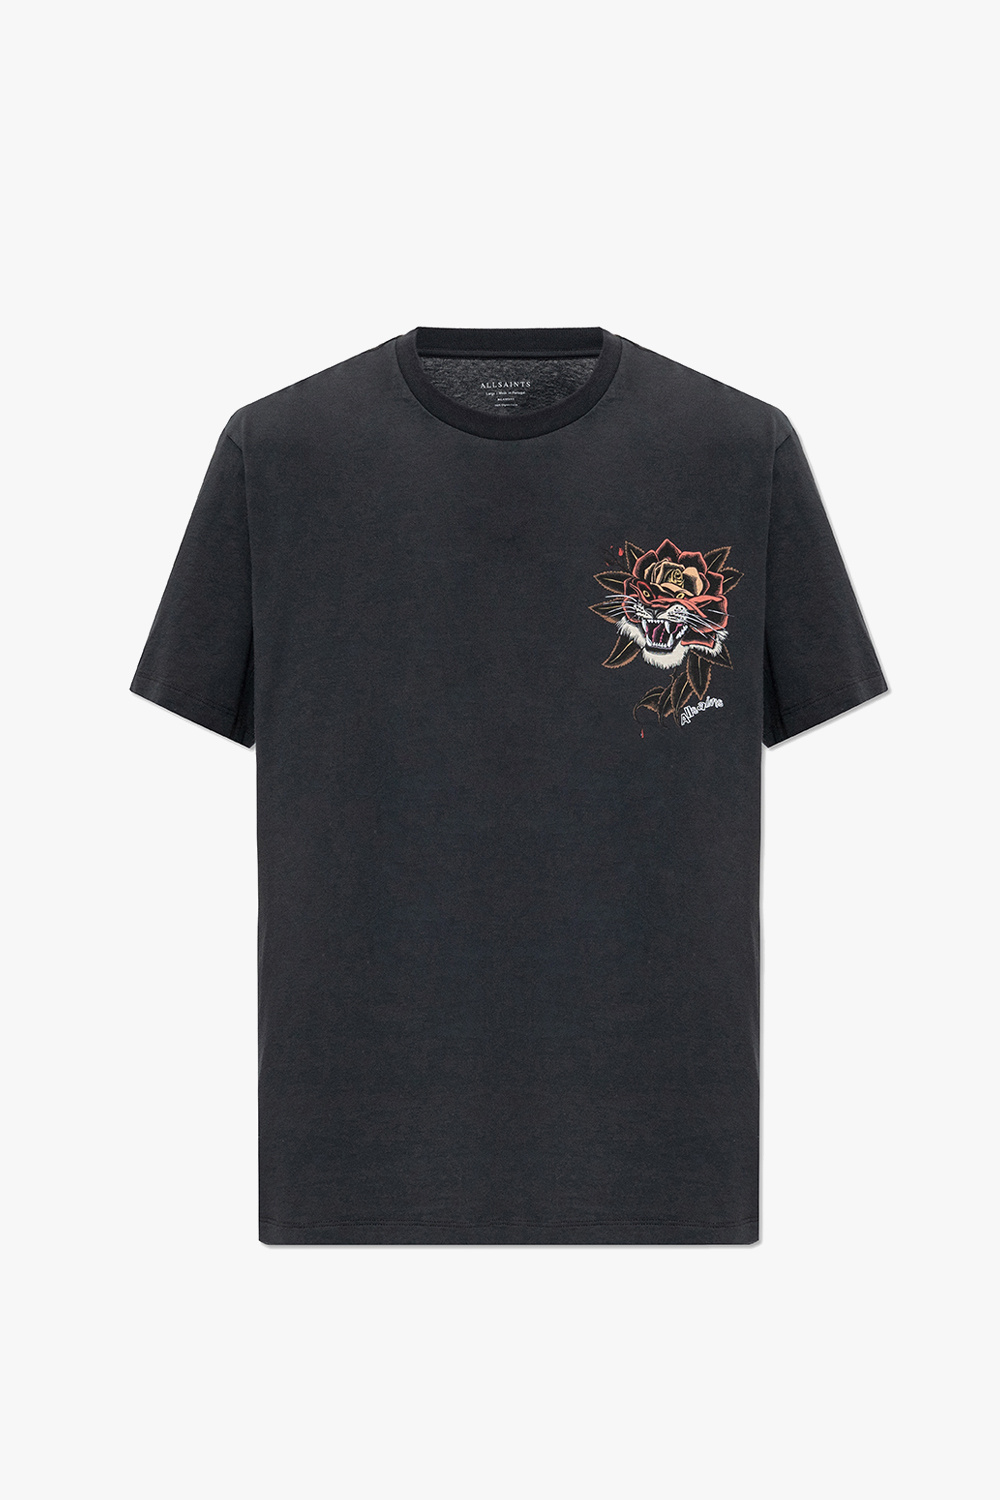 AllSaints ‘Tiger’ T-shirt